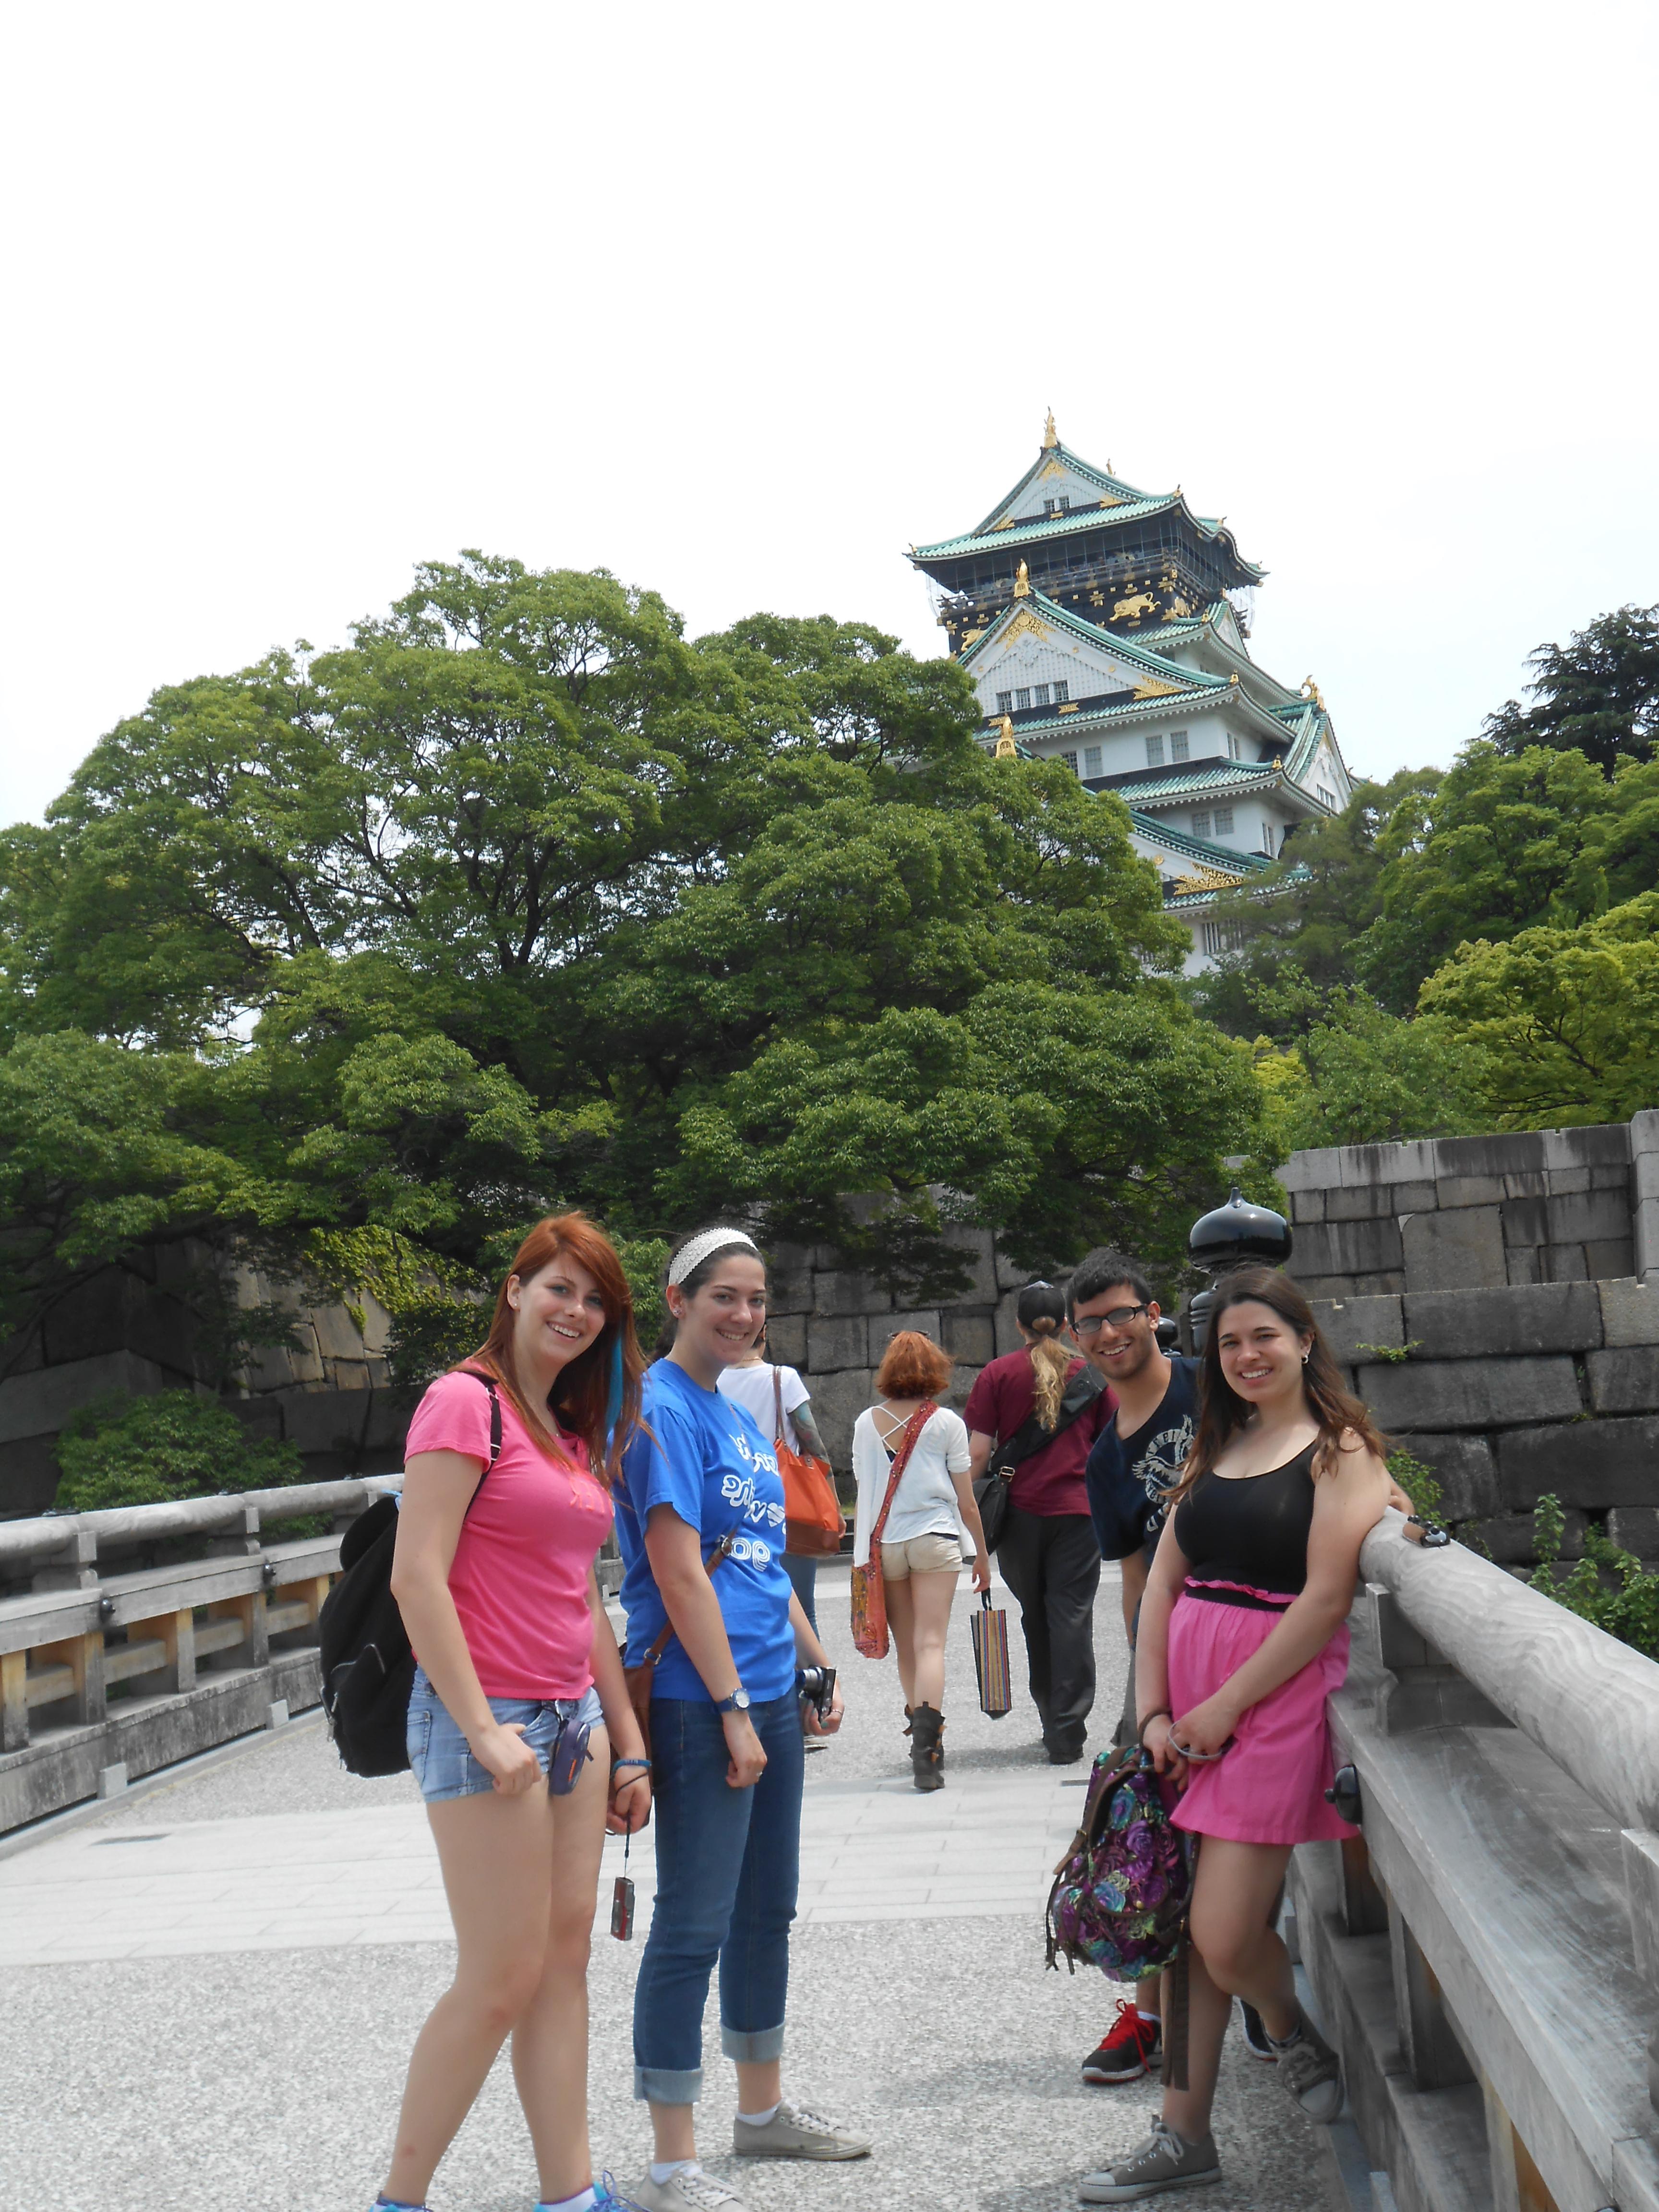 学生们在日本城堡前的桥上